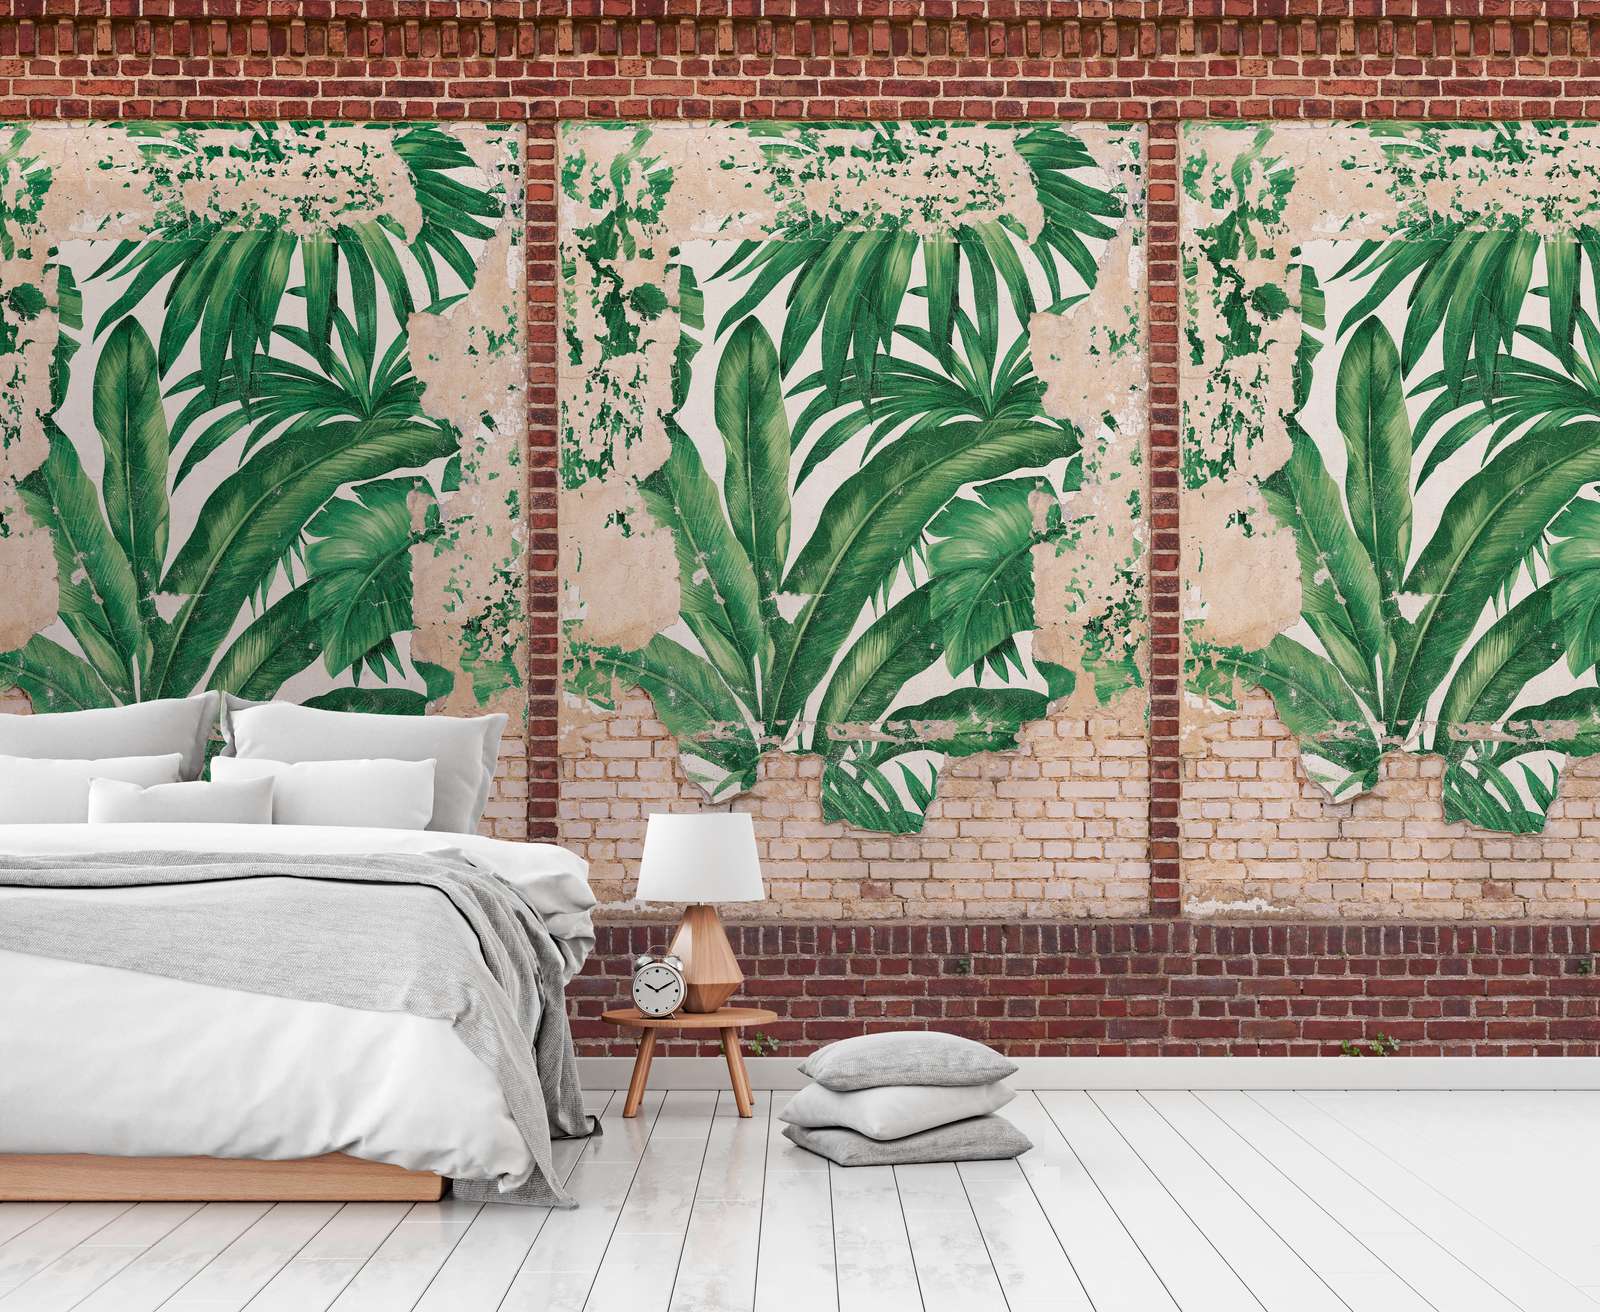             Feuilles de palmier papier peint sur mur imitation brique - marron, beige, rouge
        